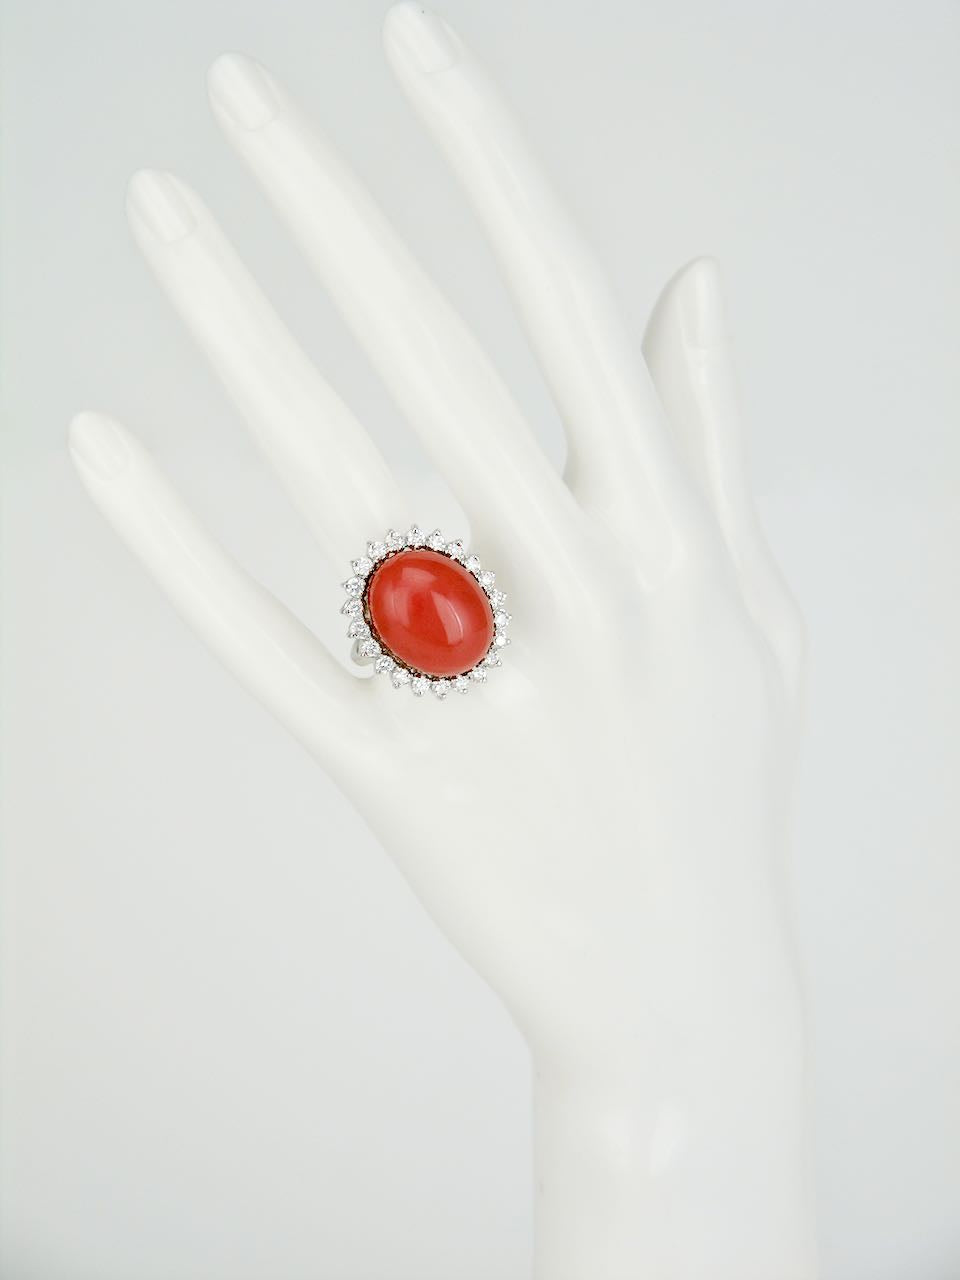 Divya Shakti 10.25-10.50 Carat White Coral Moonga Munga Gemstone Silver Ring  For Men or Women. - Walmart.com